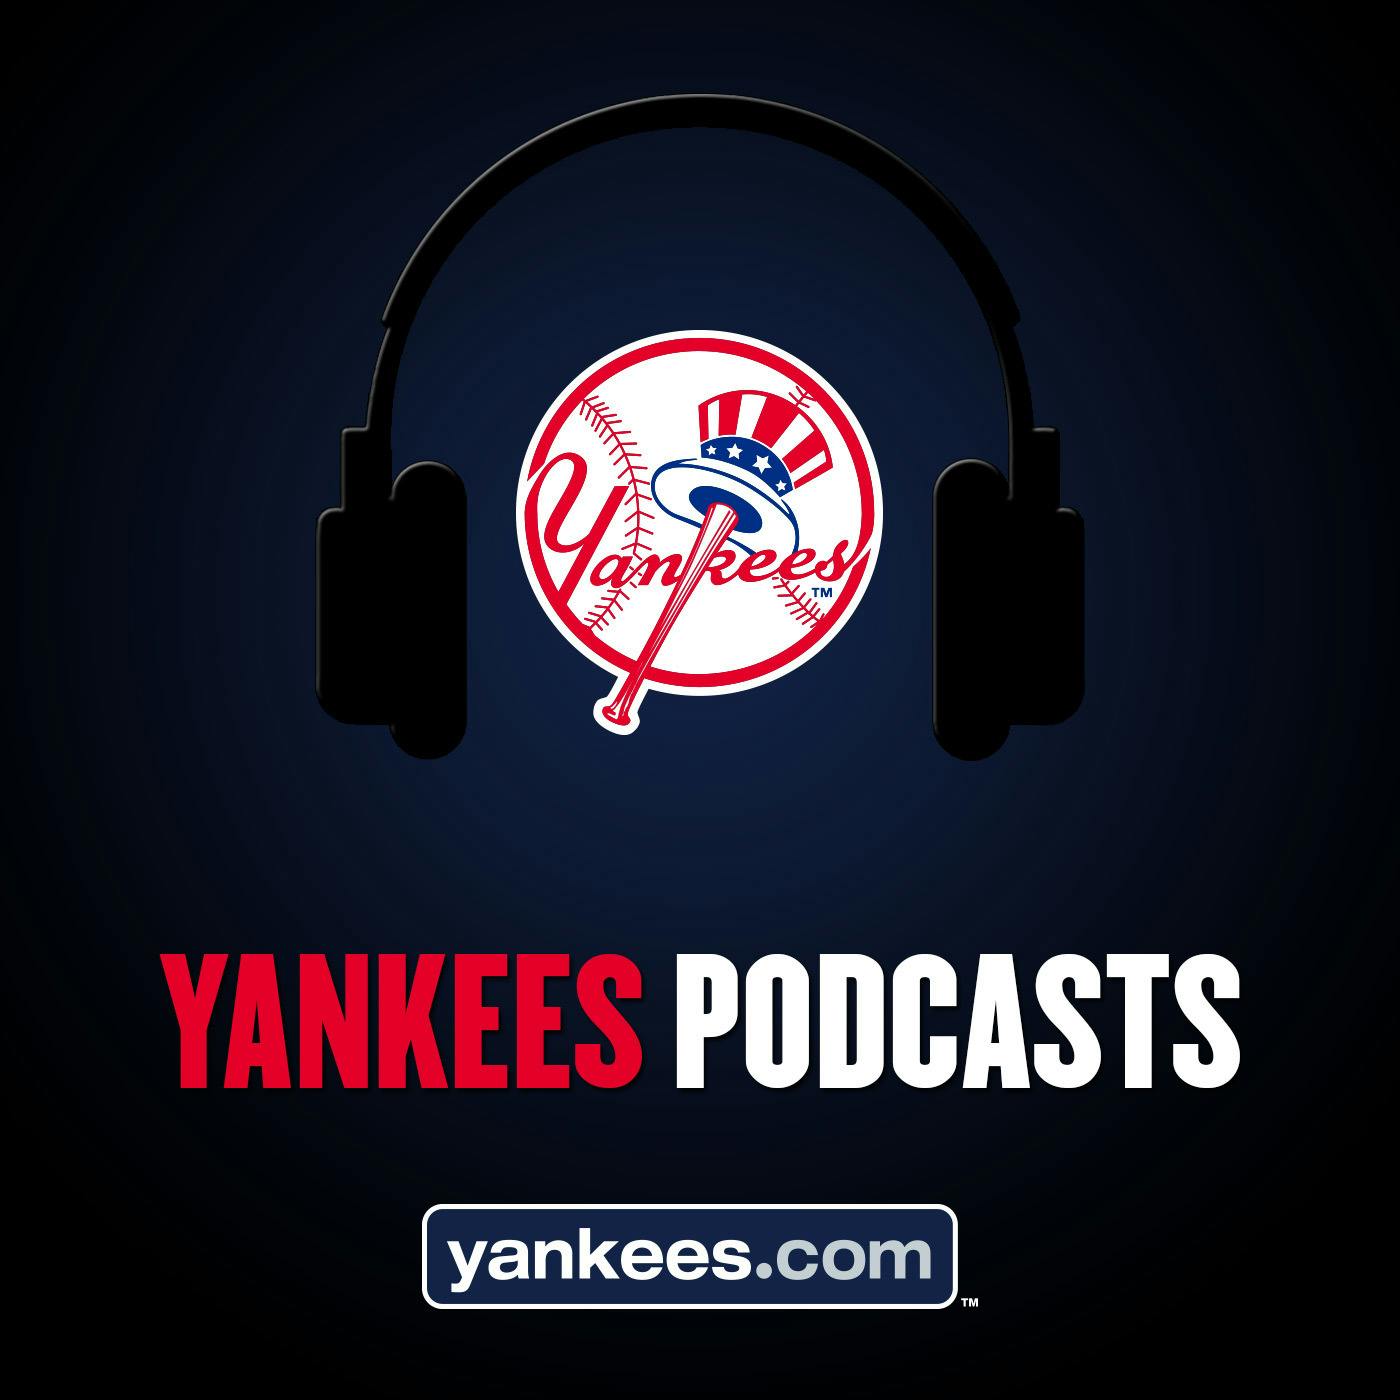 Yankees Magazine Podcast: Episode 19